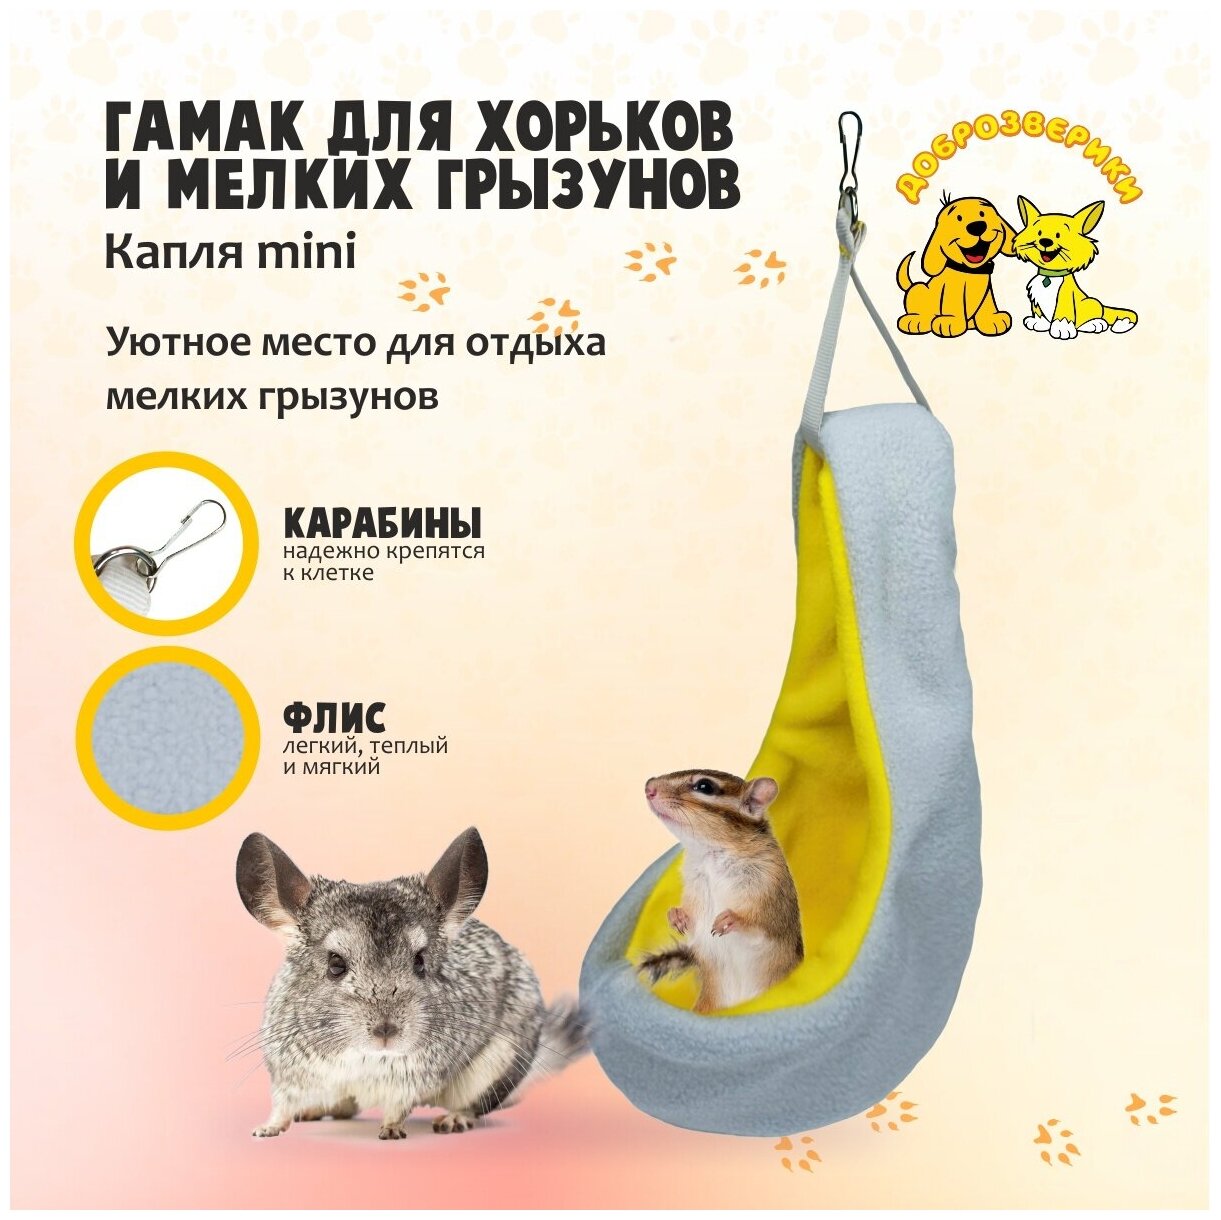 Гамак для хорьков и мелких грызунов Доброзверики, Капля mini, желто-серый